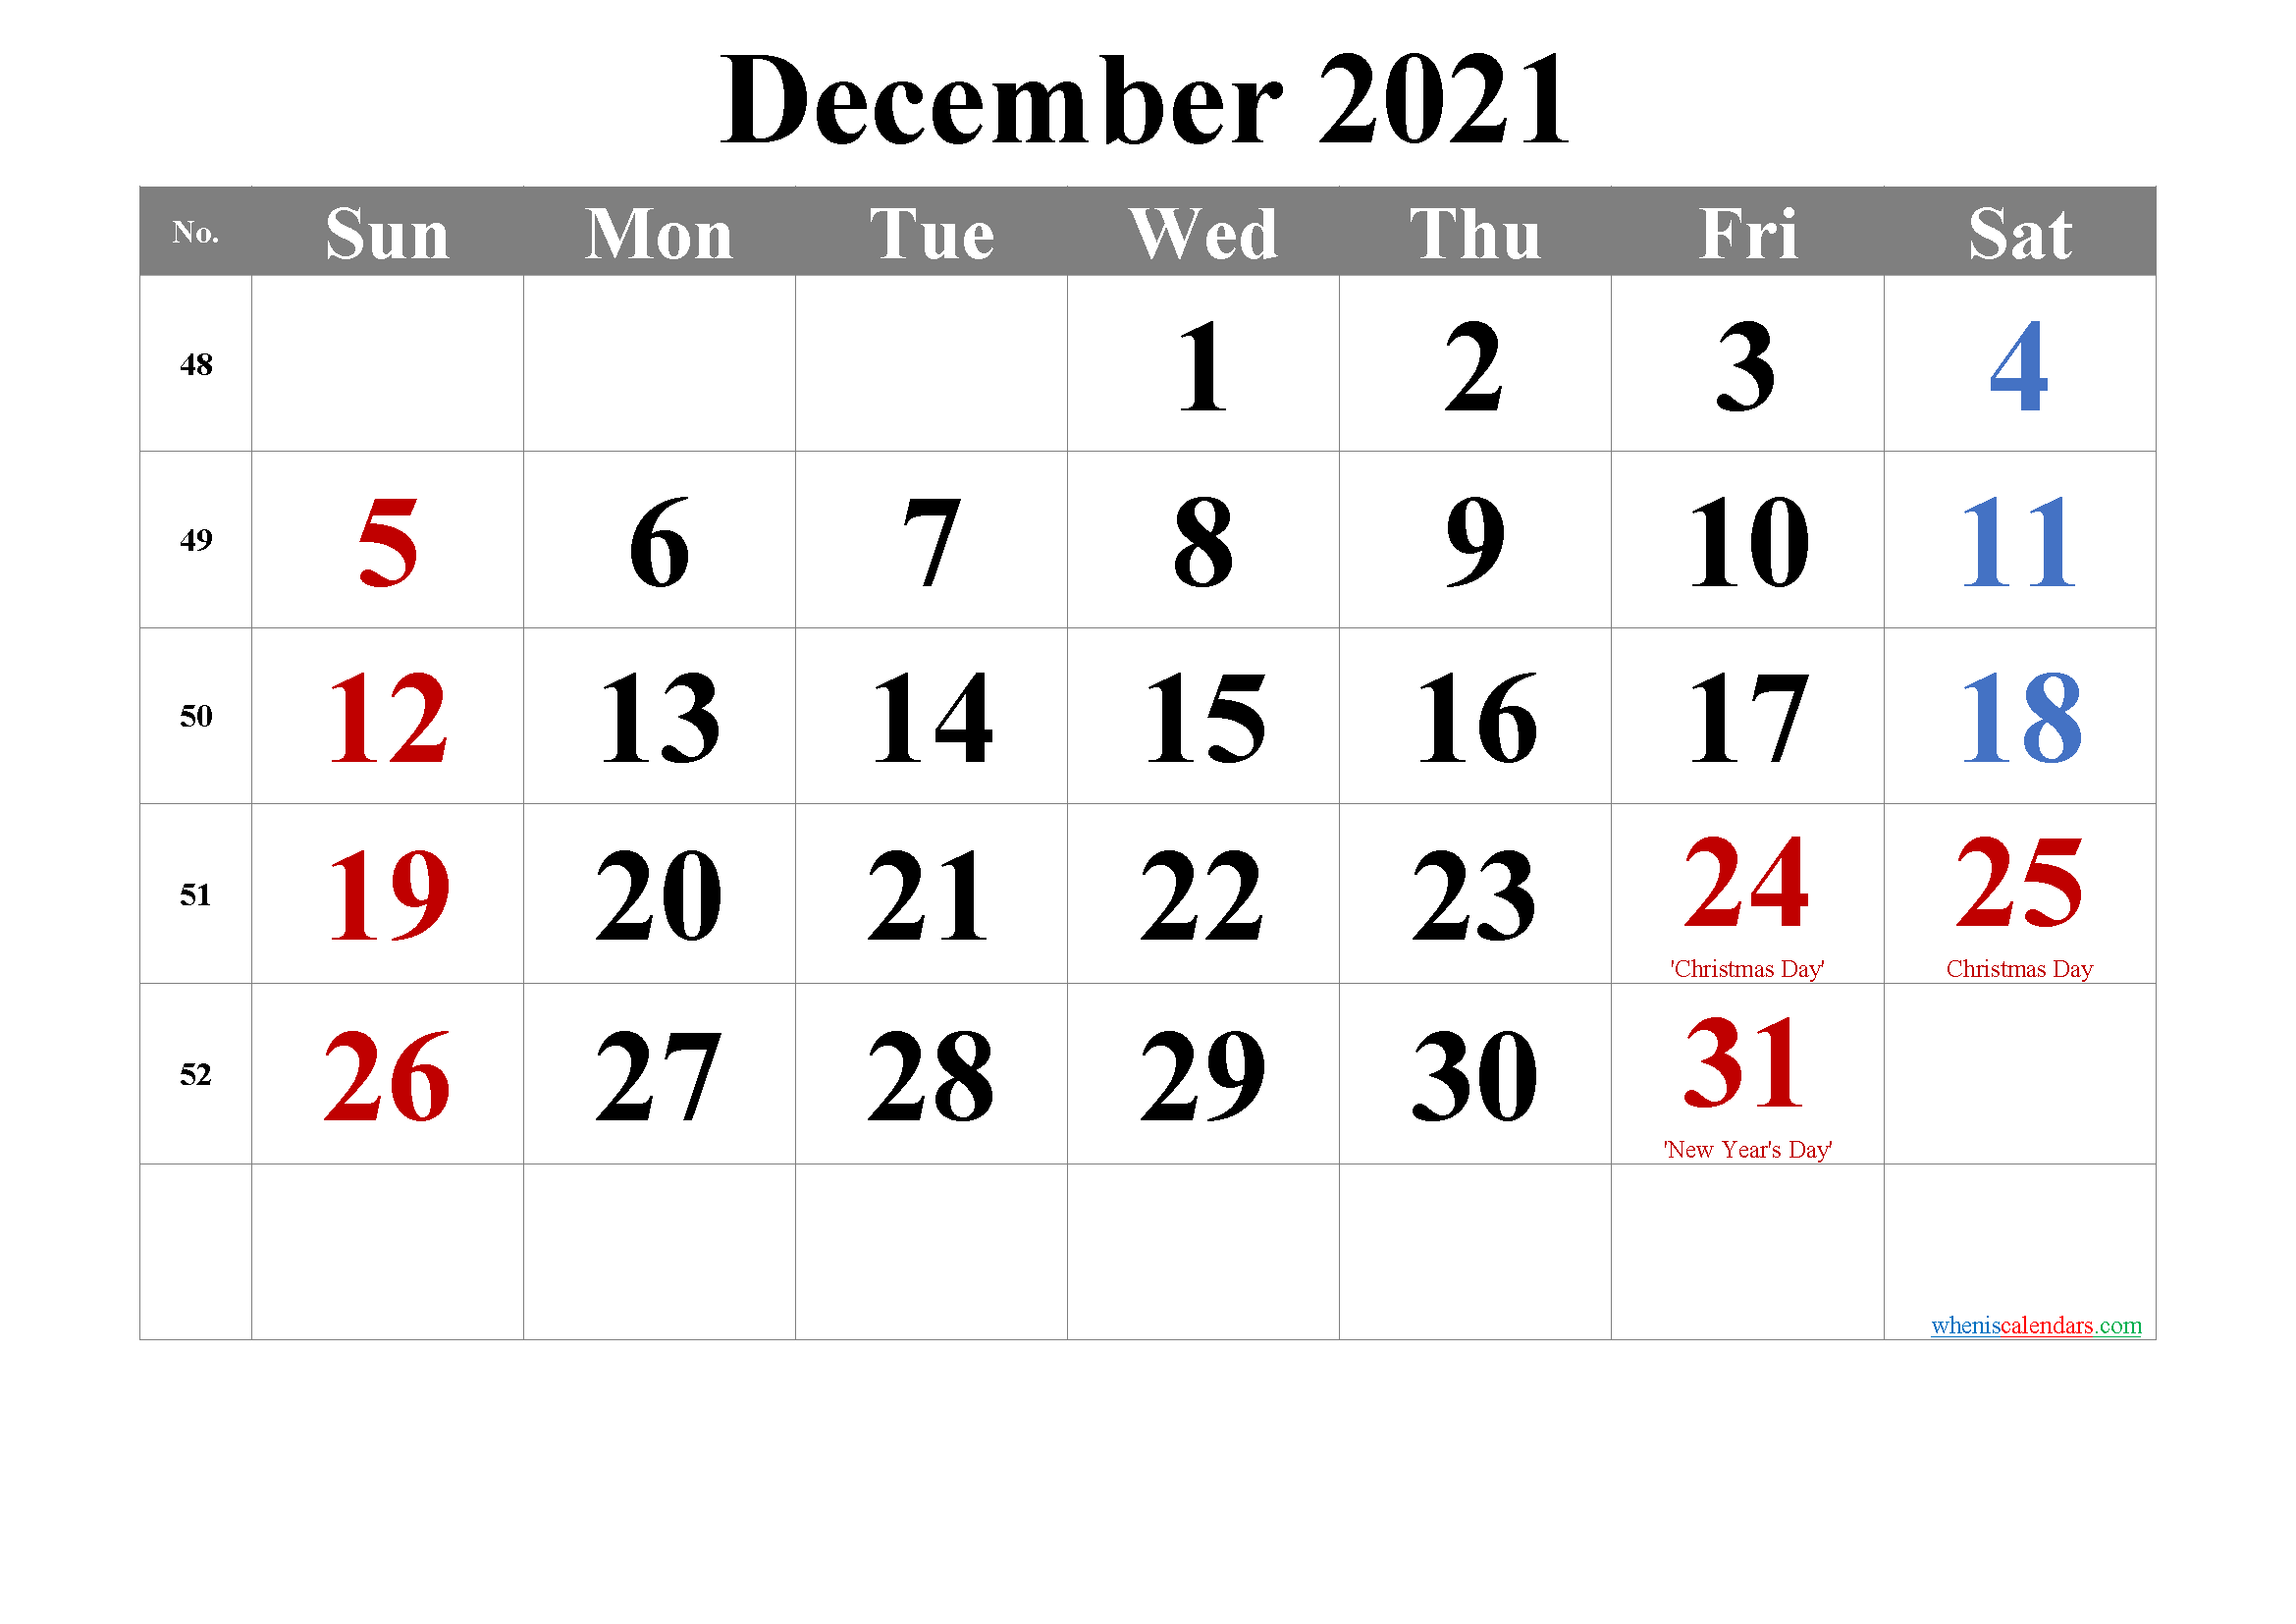 december-2021-calendar-with-holidays-printable-template-no-tr21m12